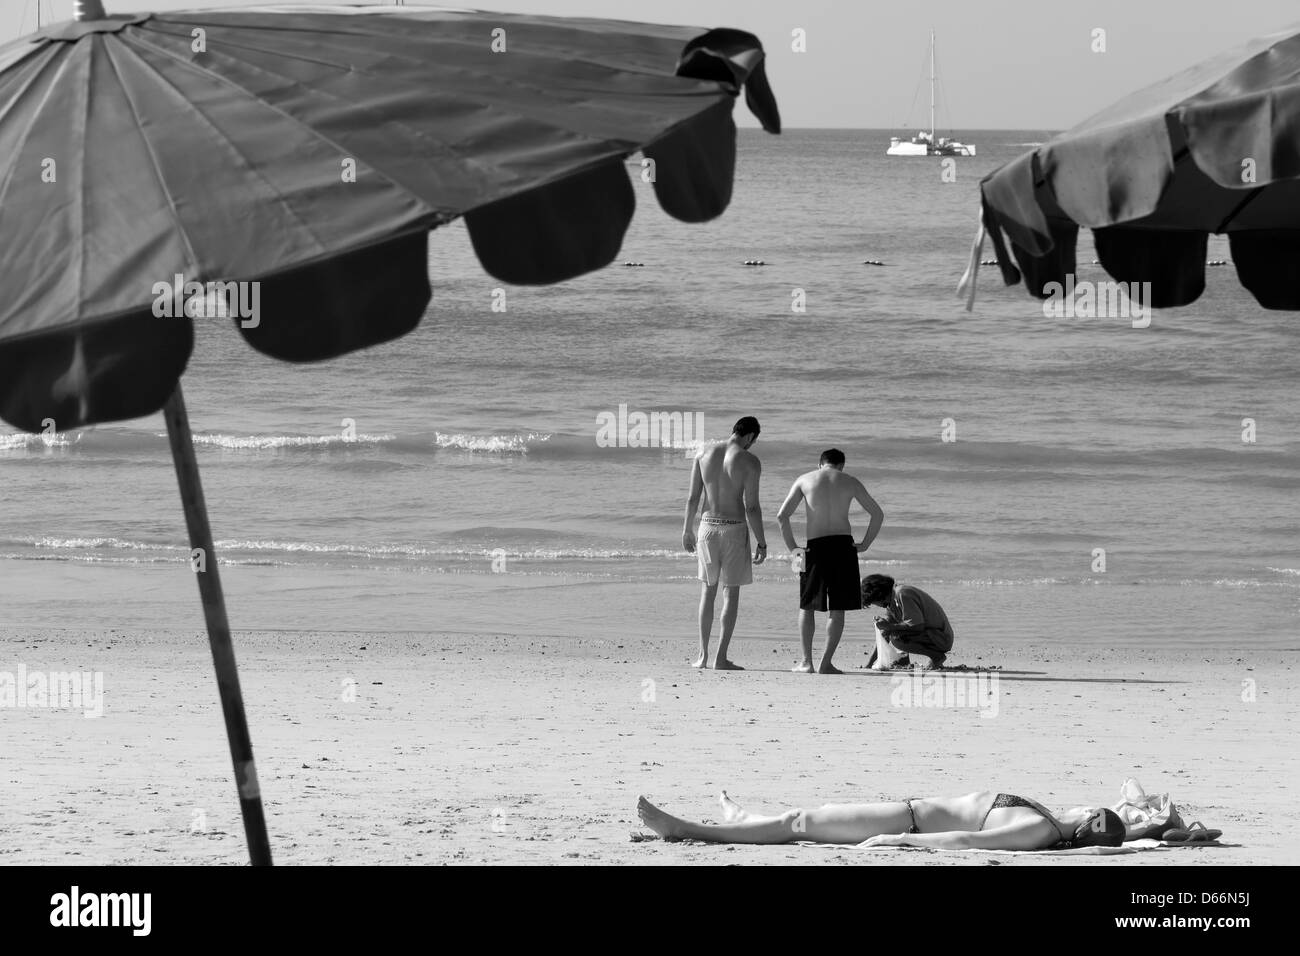 Donna sunbathes sulla spiaggia mentre tre uomini vanno clamming Foto Stock